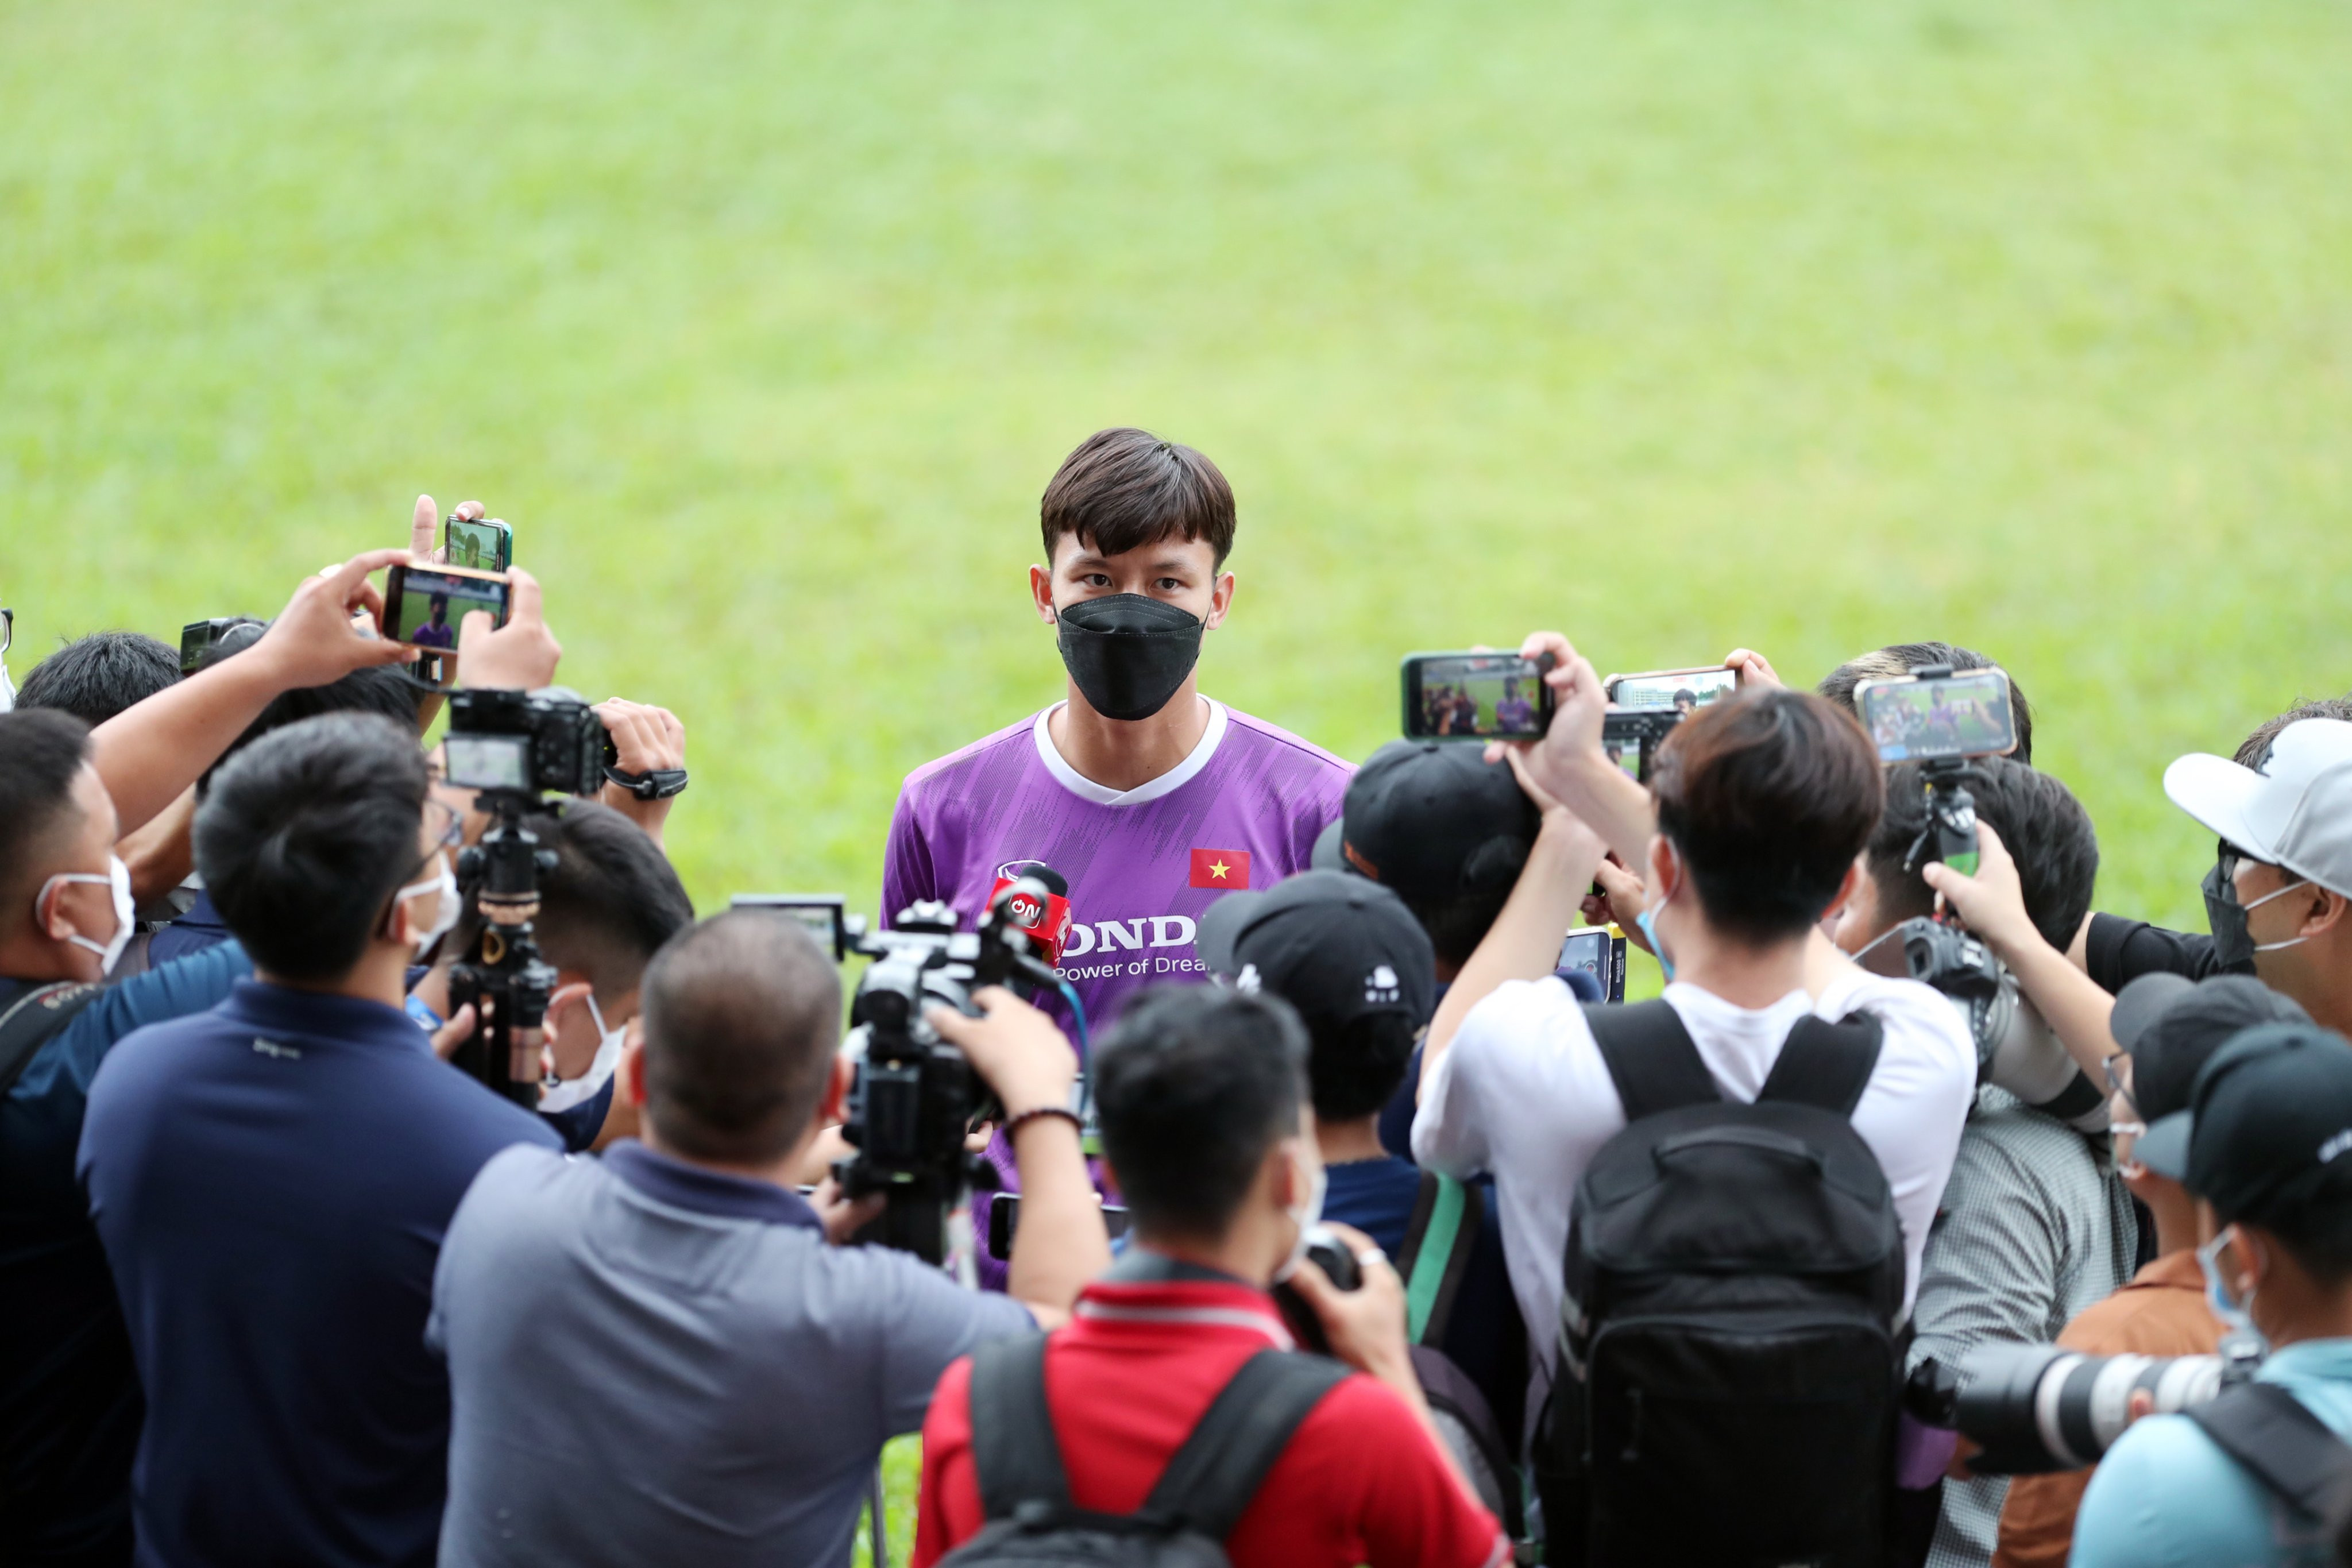 Theo kế hoạch, Quang Hải là người trả lời phỏng vấn, tuy nhiên vào giờ chót cựu đội trưởng Quế Ngọc Hải được chỉ định làm người đóng thế. Trung vệ này khẳng định toàn đội đang quyết tâm có trận đấu đẹp mắt trên sân Thống Nhất vào tối 1/6 tới.